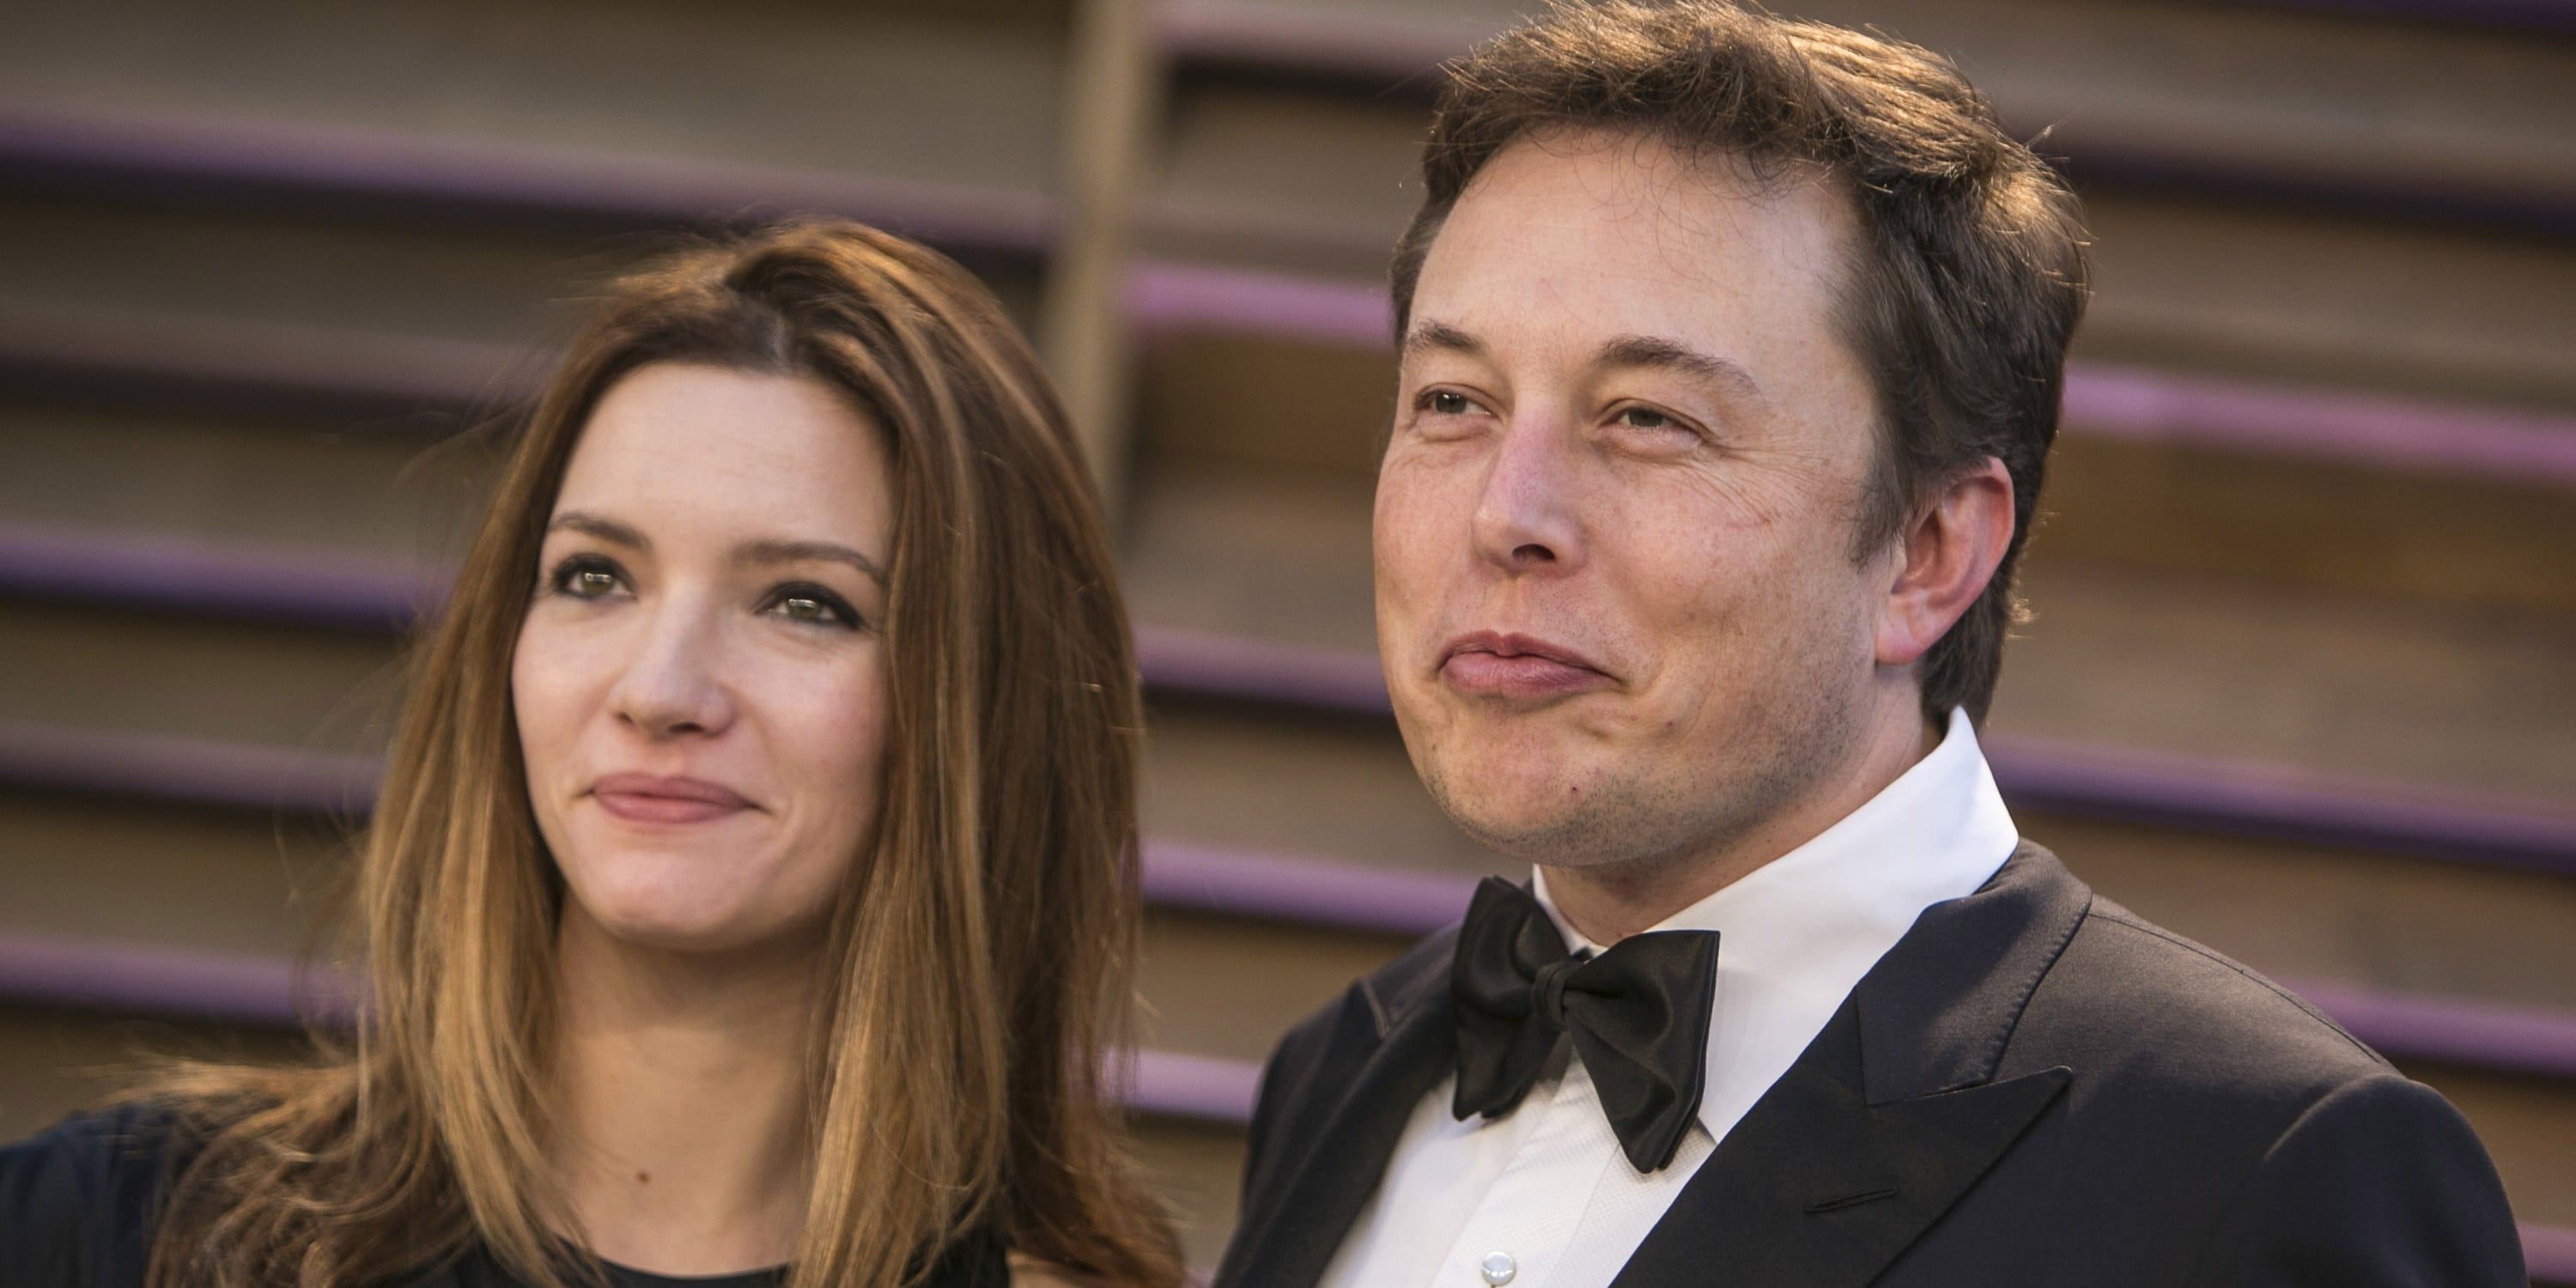 5 mulheres namoraram com Elon Musk (e 10 regras que ele as fez seguir)